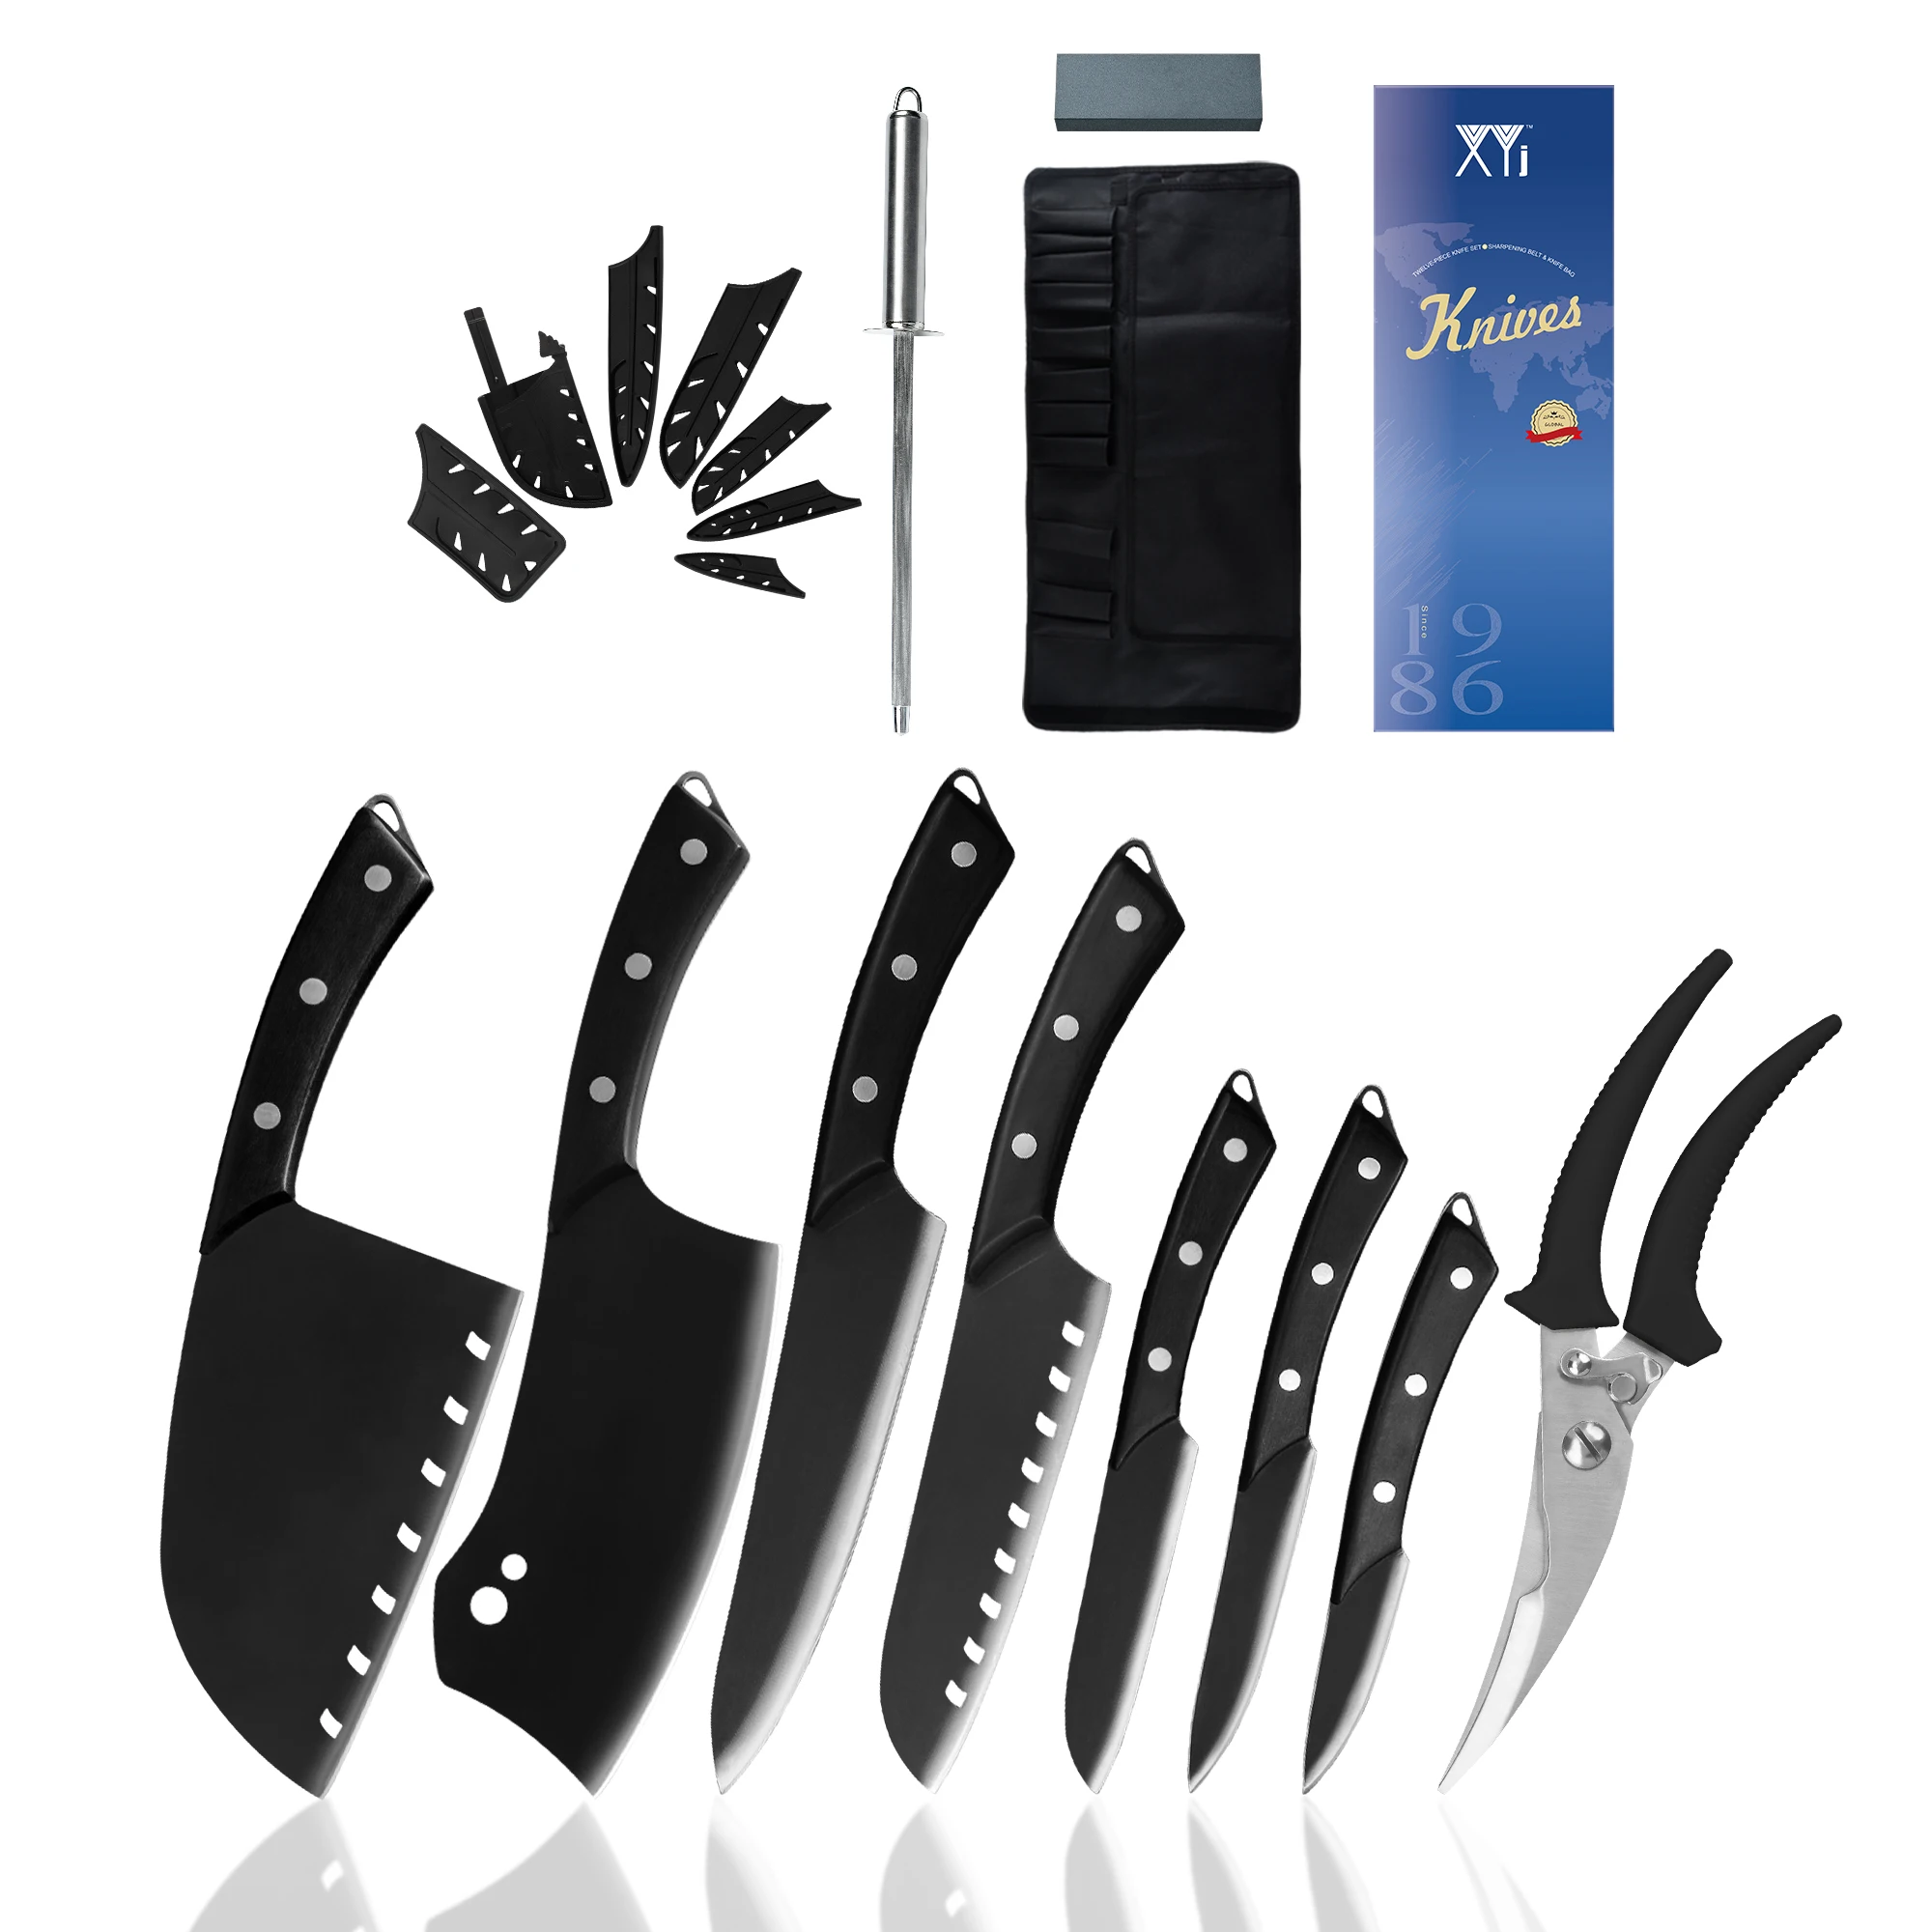 

Набор кухонных ножей из нержавеющей стали XYj, многофункциональный Набор из 7 предметов для заточки ножниц, подарочный набор инструментов